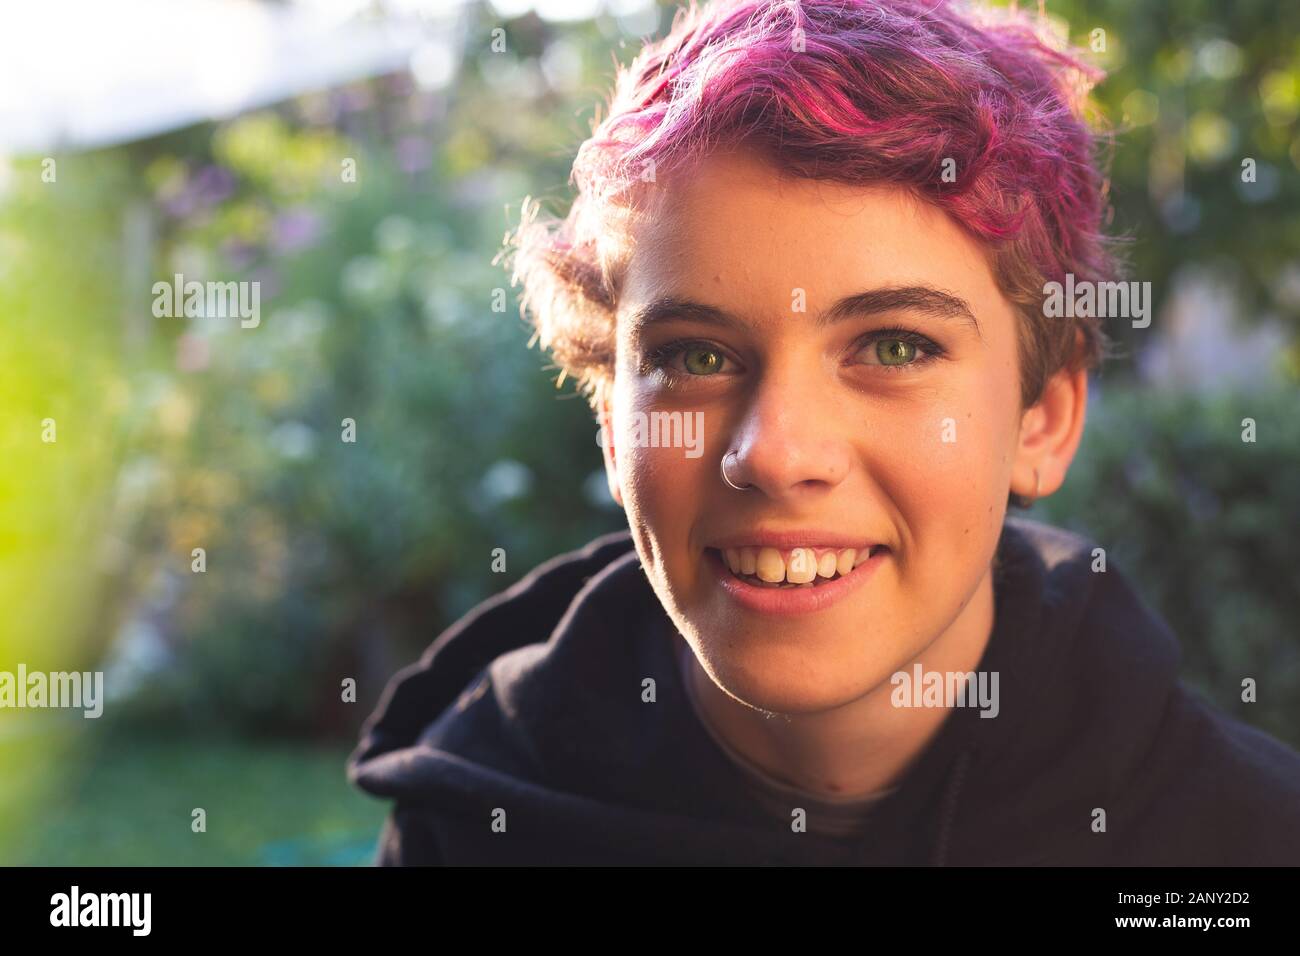 Ritratto di felice, sorridente ragazza con i capelli corti in vivaci e naturali, impostazione esterna Foto Stock